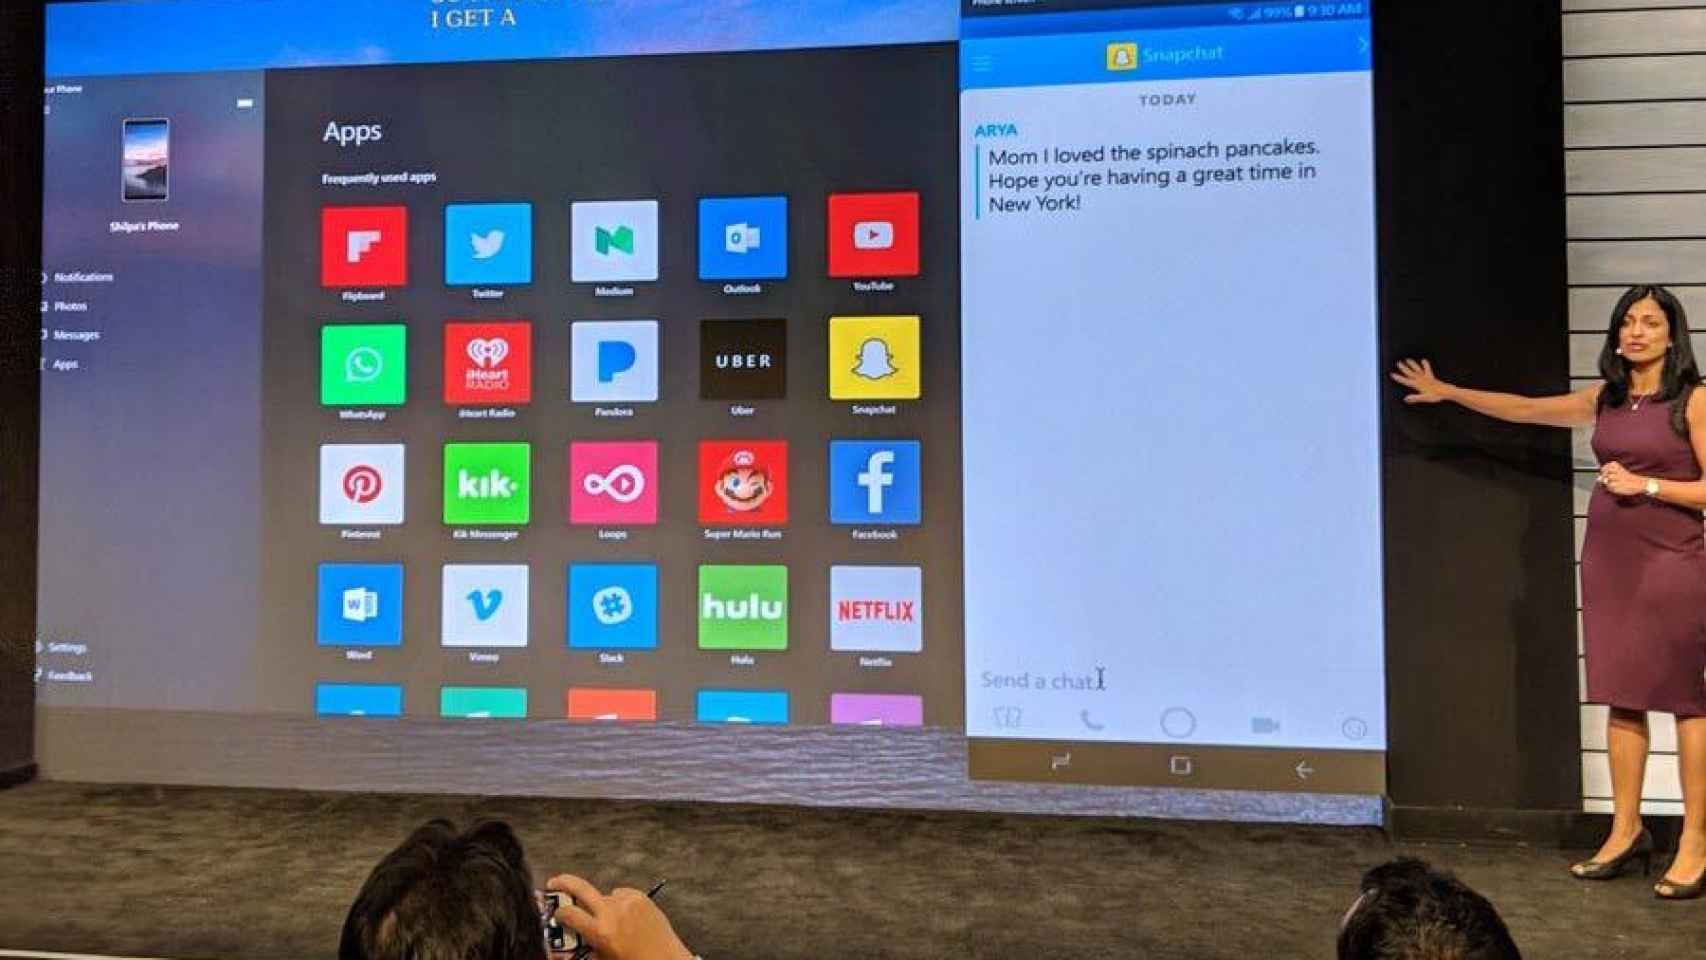 Controlar tu móvil Android en tu PC con Windows 10, la última novedad de Microsoft